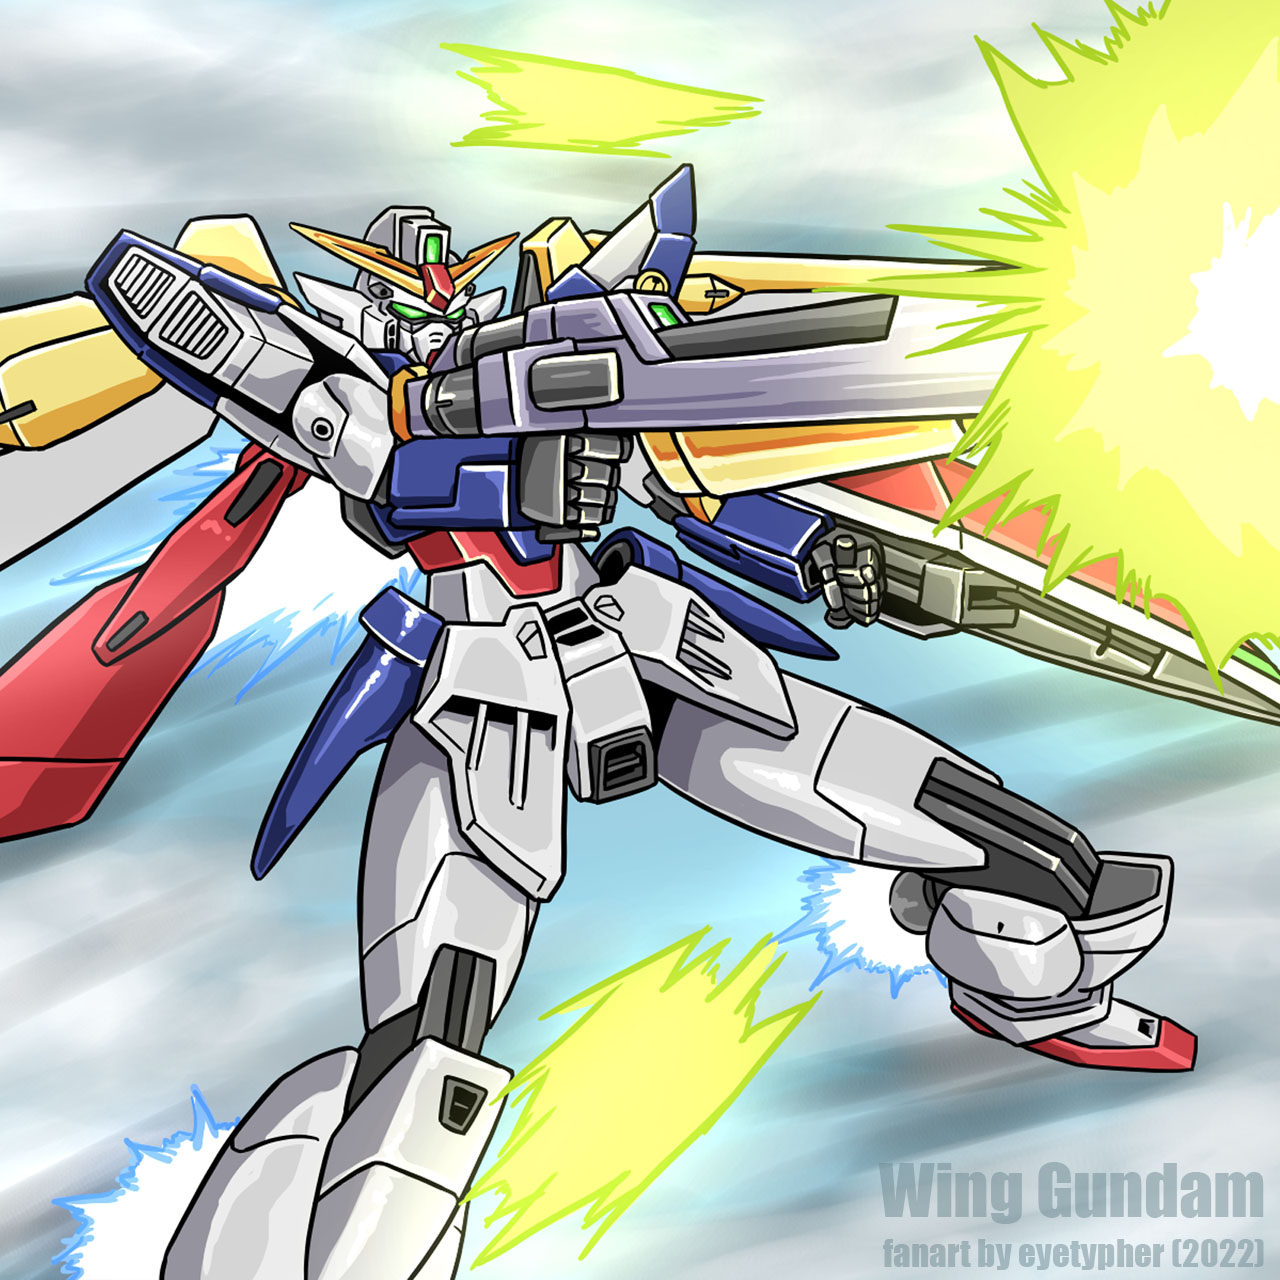 Wing Gundam Mobile Suit Gundam Wing Anime Mechs Gundam Super Robot Wars Artwork Digital Art Fan Art 1280x1280